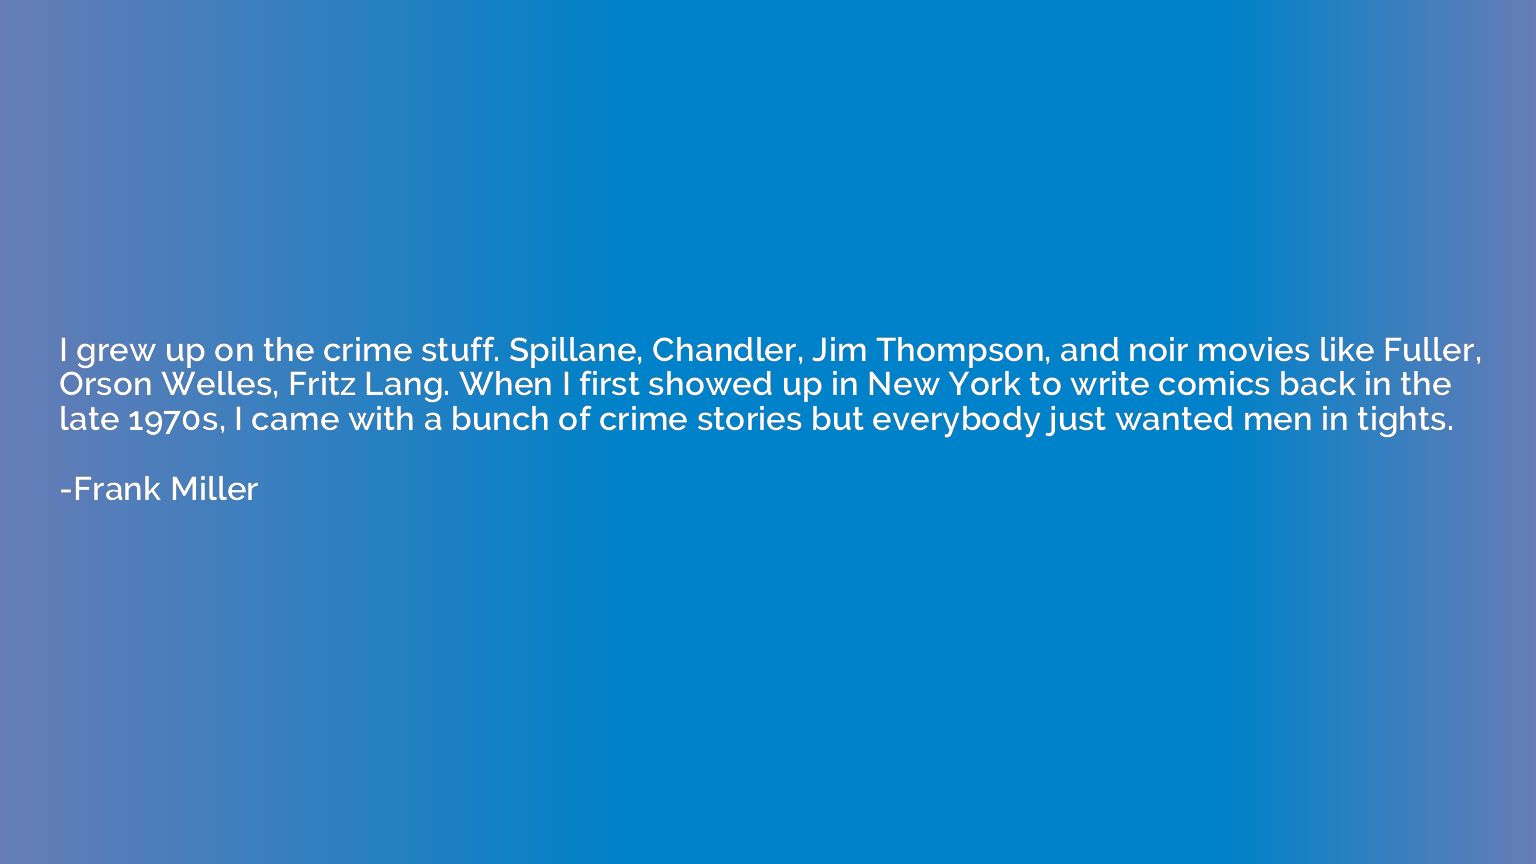 I grew up on the crime stuff. Spillane, Chandler, Jim Thomps